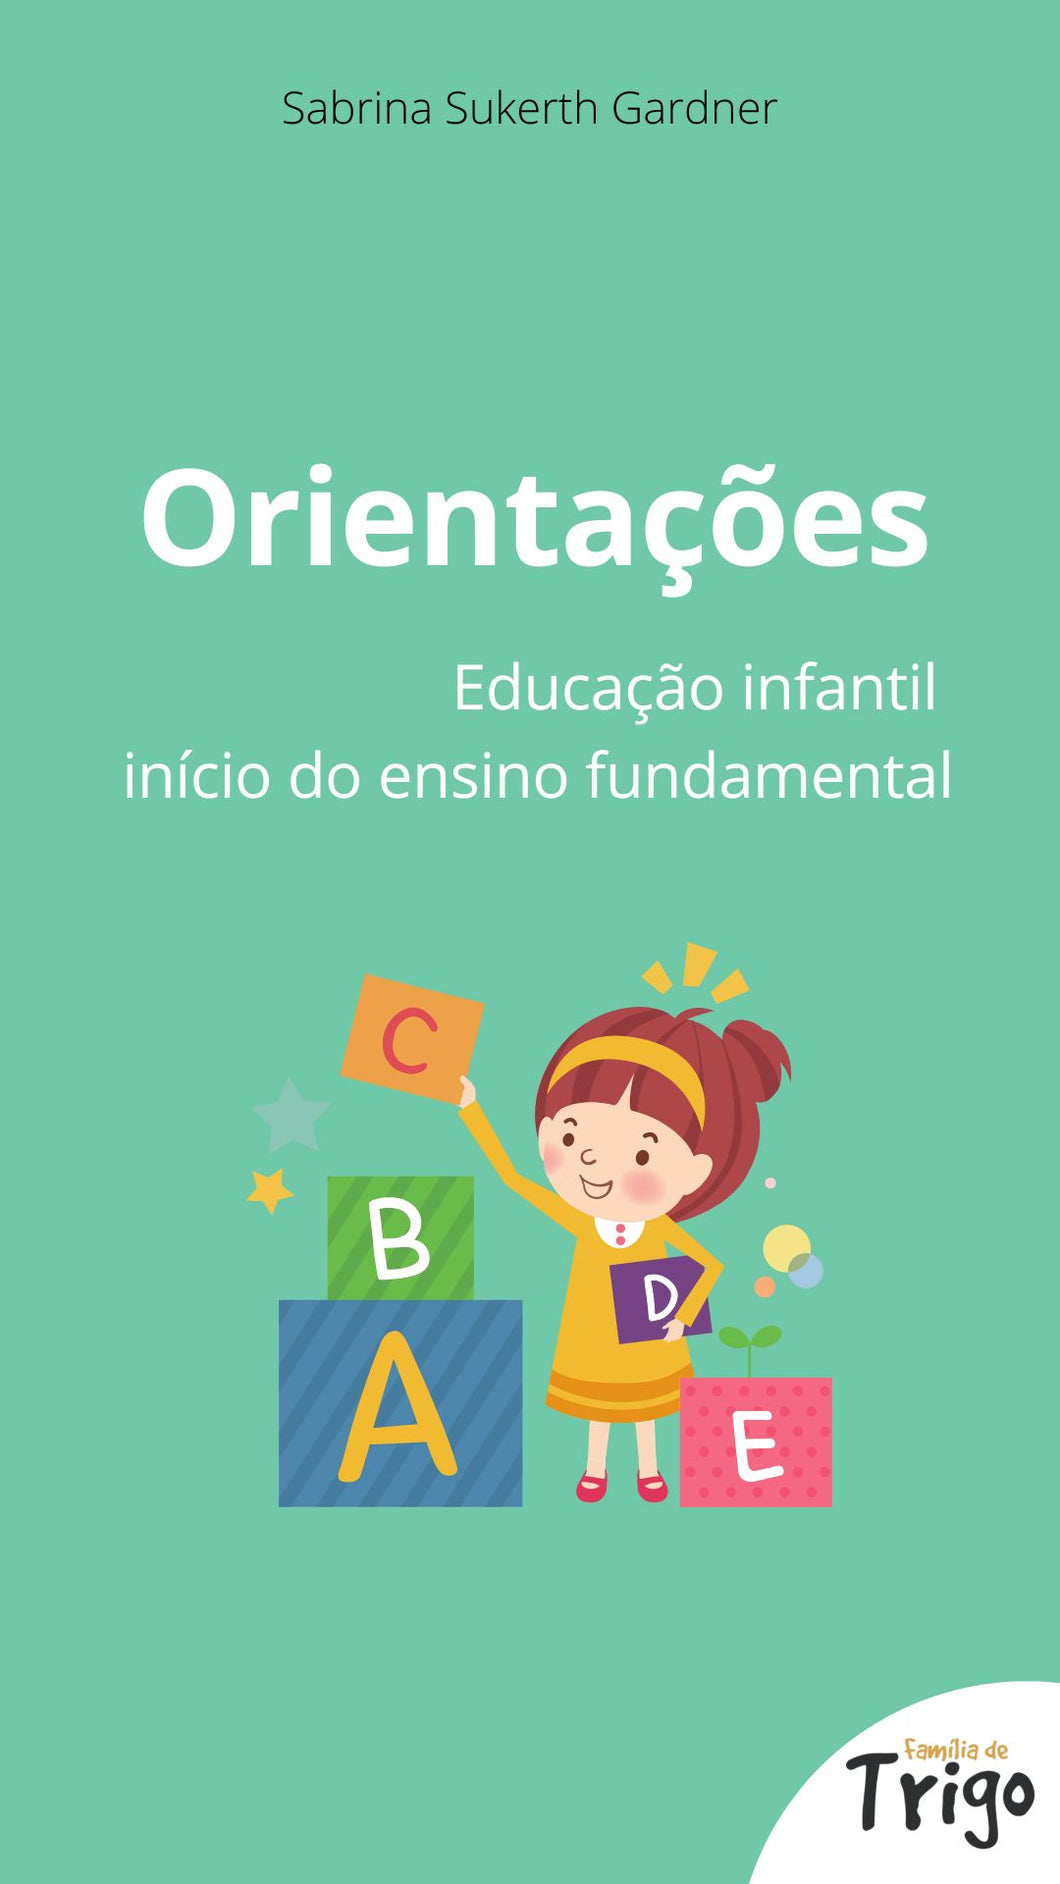 Guia de orientações - Educação infantil e início do ensino fundamental (GRATUITO)